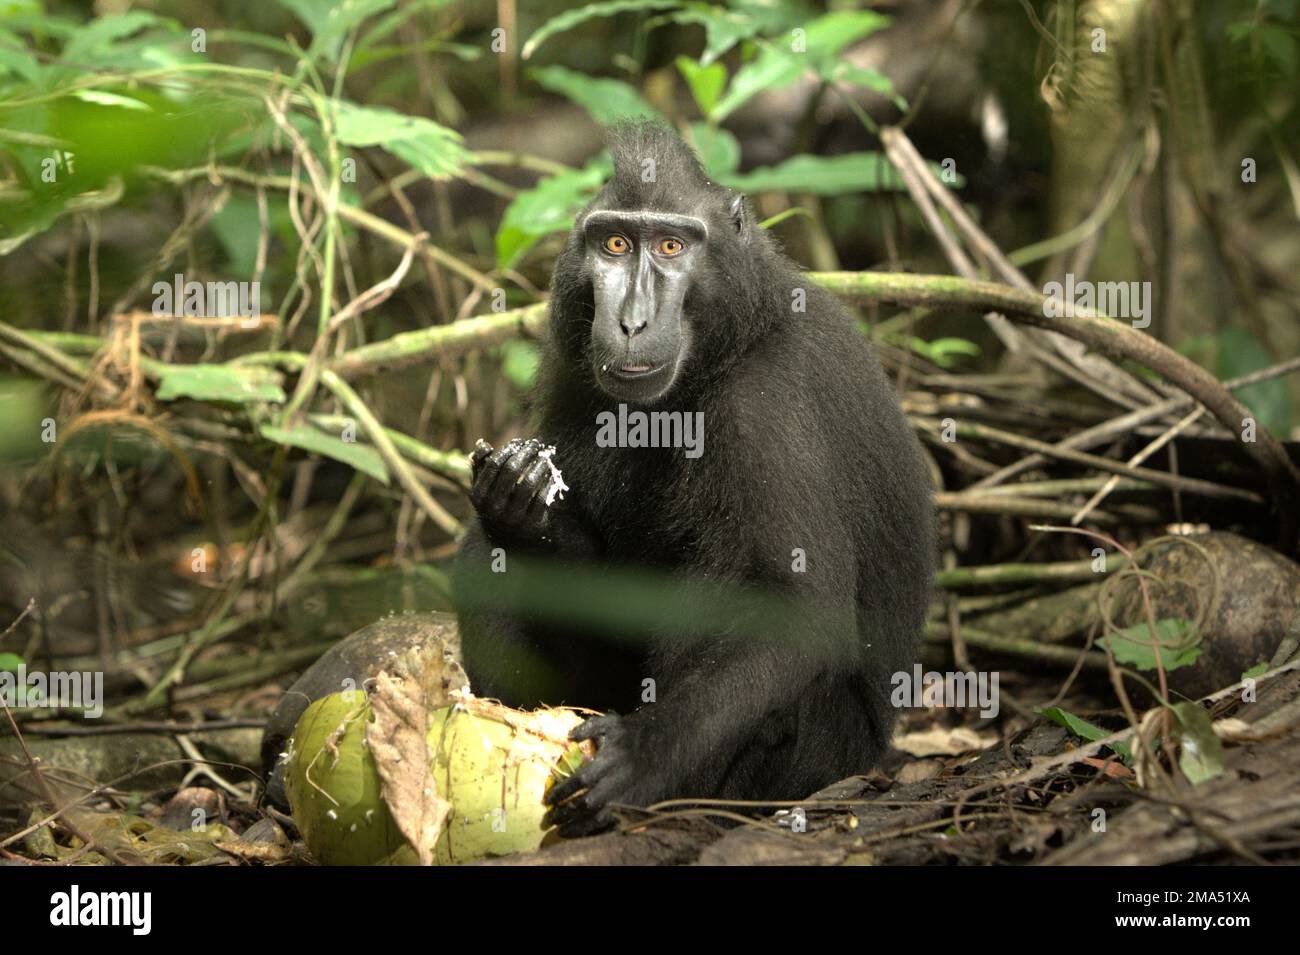 Un macaco sulawesi con cresta nera (Macaca nigra) che mangia frutta di cocco mentre è seduto sul pavimento della foresta in un habitat naturale: La foresta di Tangkoko nel Nord Sulawesi, Indonesia. Piantare alberi da frutto nell'area tra la foresta e il paesaggio agricolo contribuirebbe a ridurre i conflitti tra scimmie e umani, secondo Reyni Palohoen, coordinatore del progetto di Selamatkan Yaki (Save Yaki) nell'aprile 2021, rispondendo alla 'invasione di scimmie' delle terre agricole nella reggenza di Minahasa del Sud, Sulawesi del Nord, Indonesia. Foto Stock